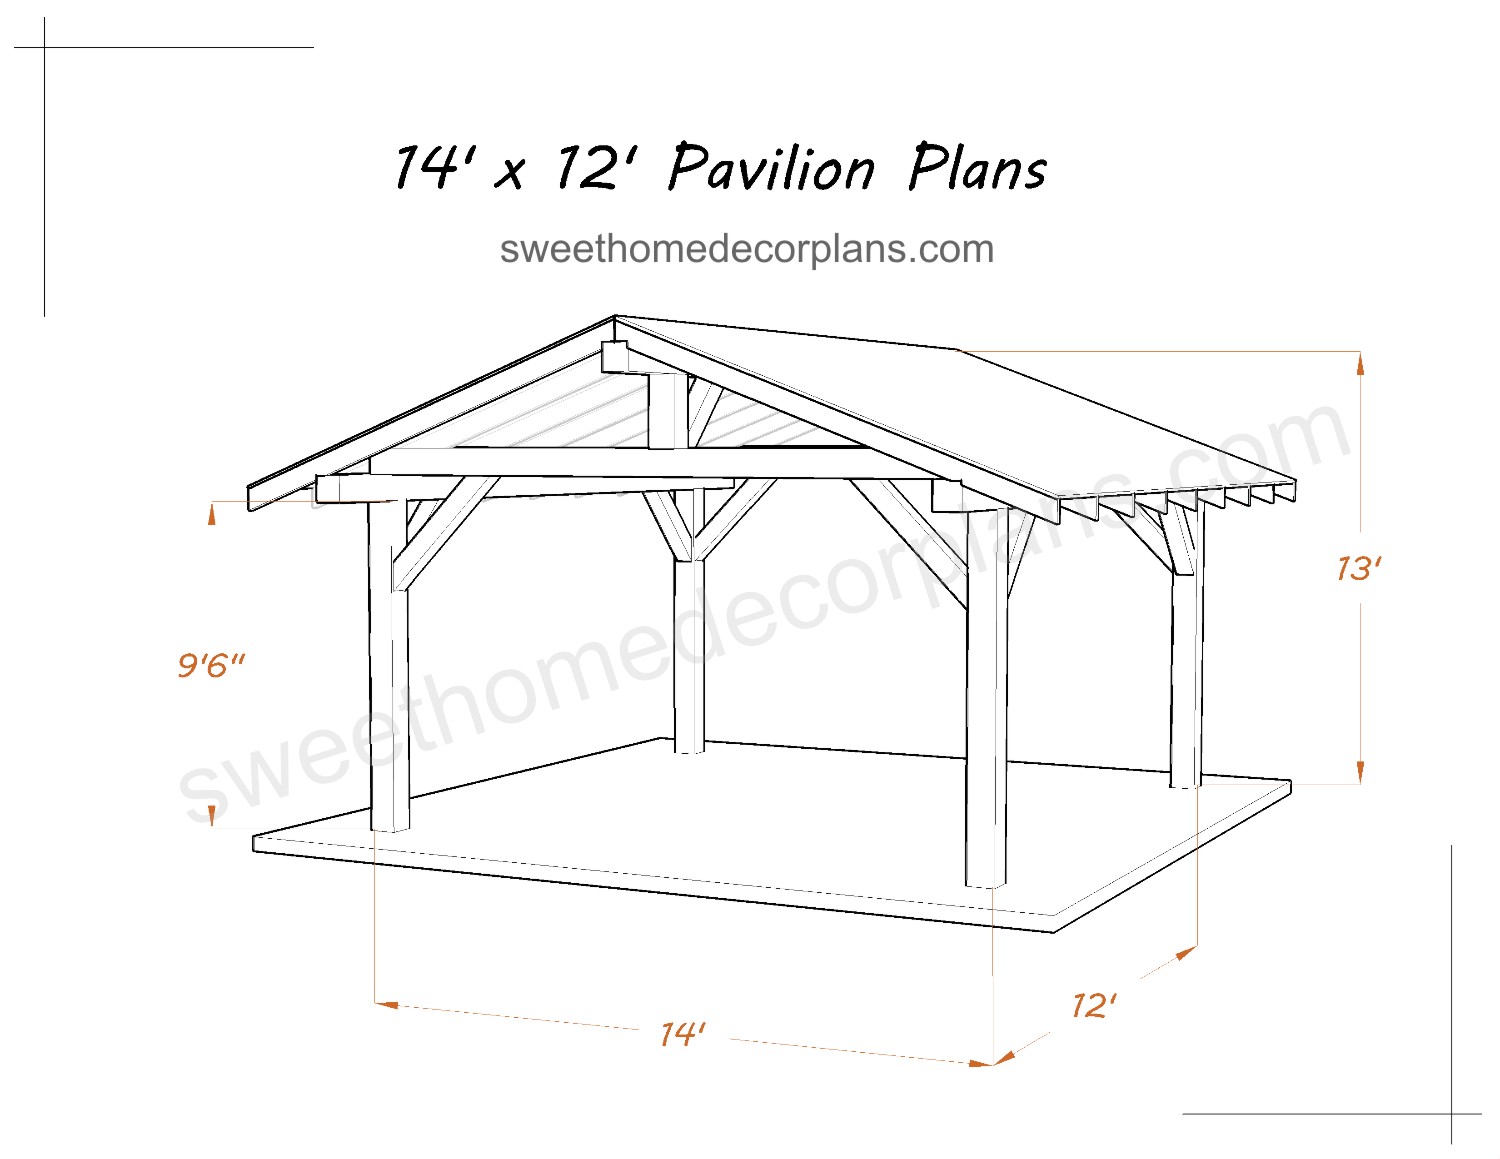 Wooden-Diy-14-x-12-gable-pavilion-plans-in-pdf